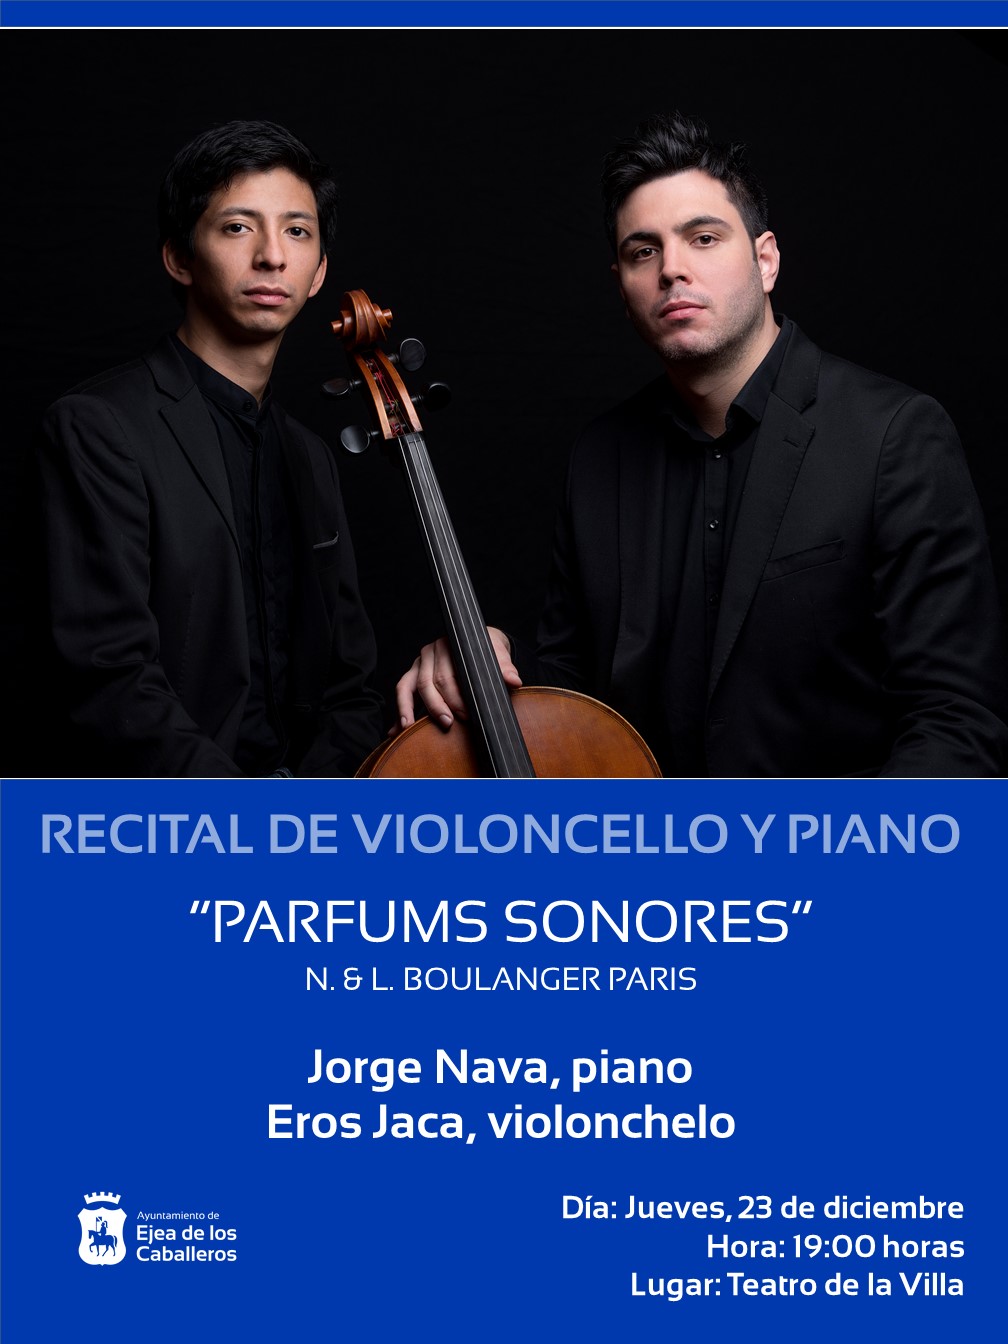 En este momento estás viendo “Parfums Sonores”: Un recital del violoncellista Eros Jaca y del pianista Jorge Nava, con obras de las hermanas Boulanger, Stravinsky y Fauré